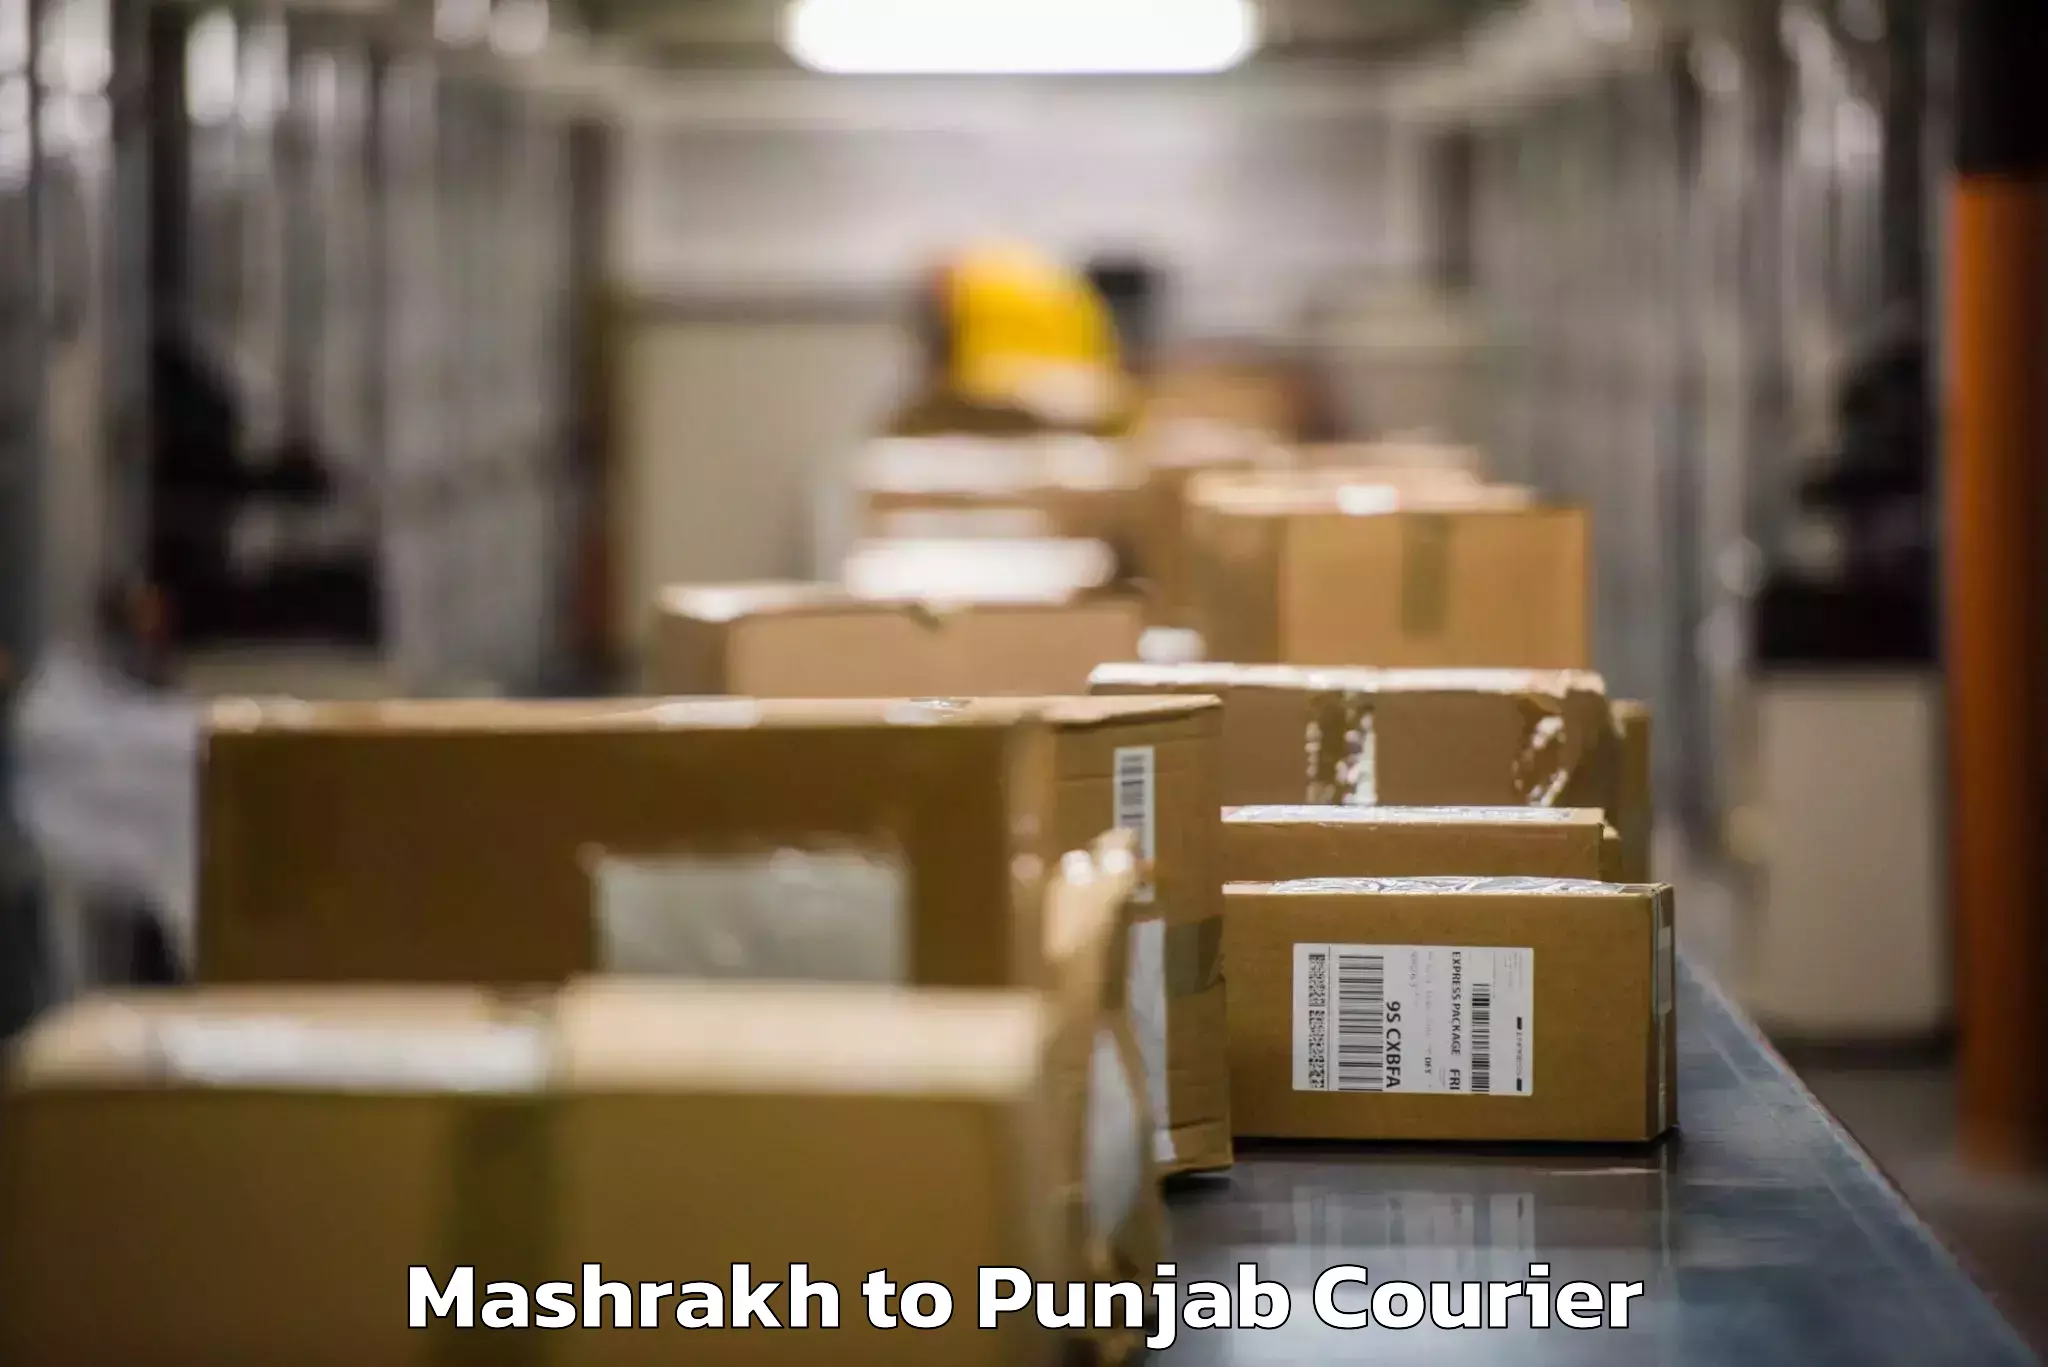 Baggage shipping experience Mashrakh to Punjab